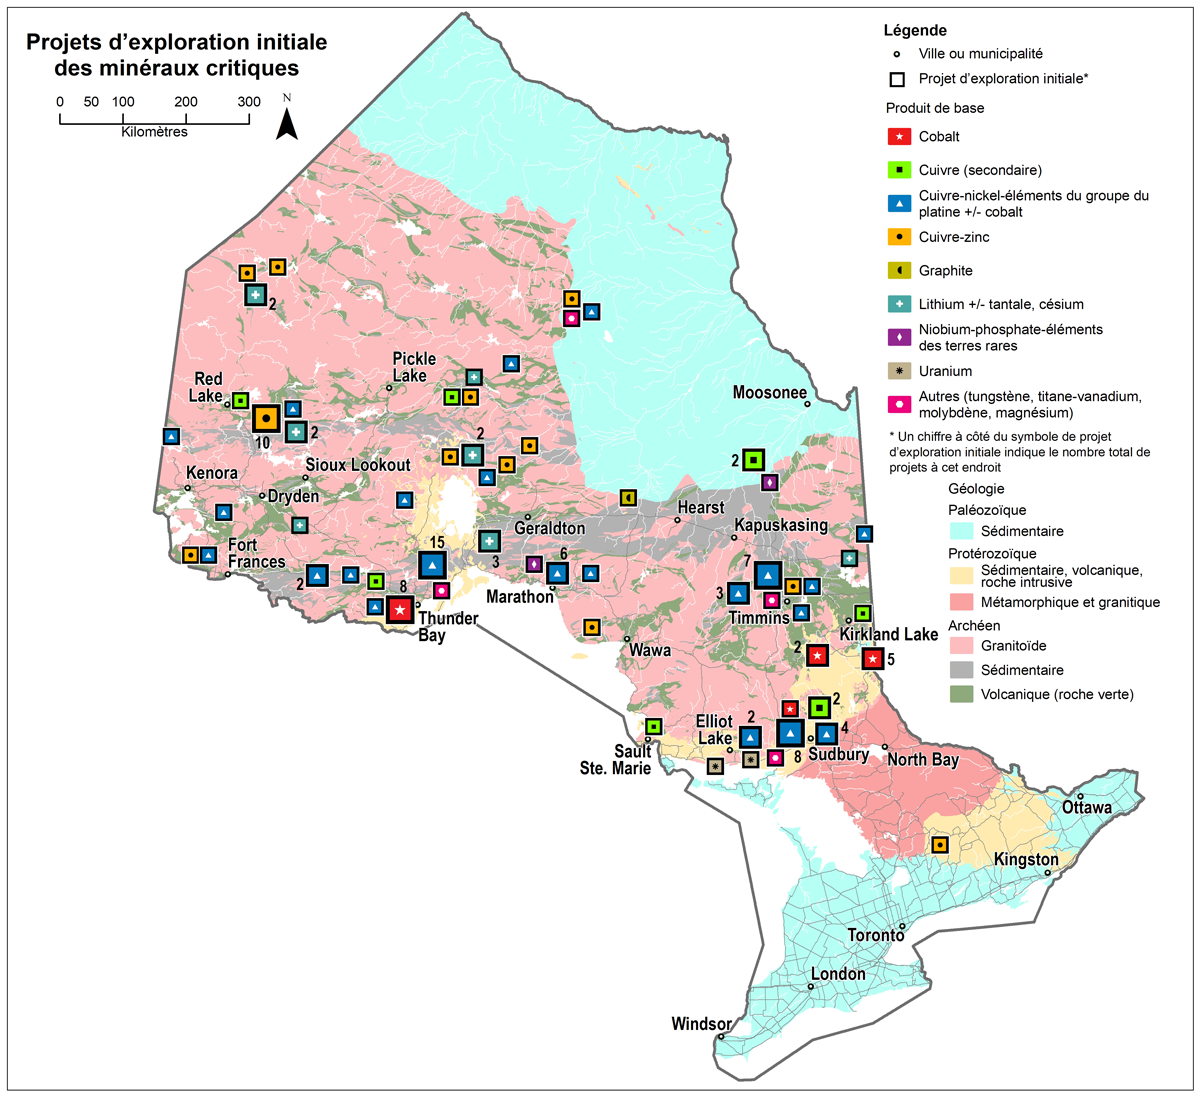 La figure 1 montre les projets d’exploration initiale en cours en Ontario en date de mars 2022.